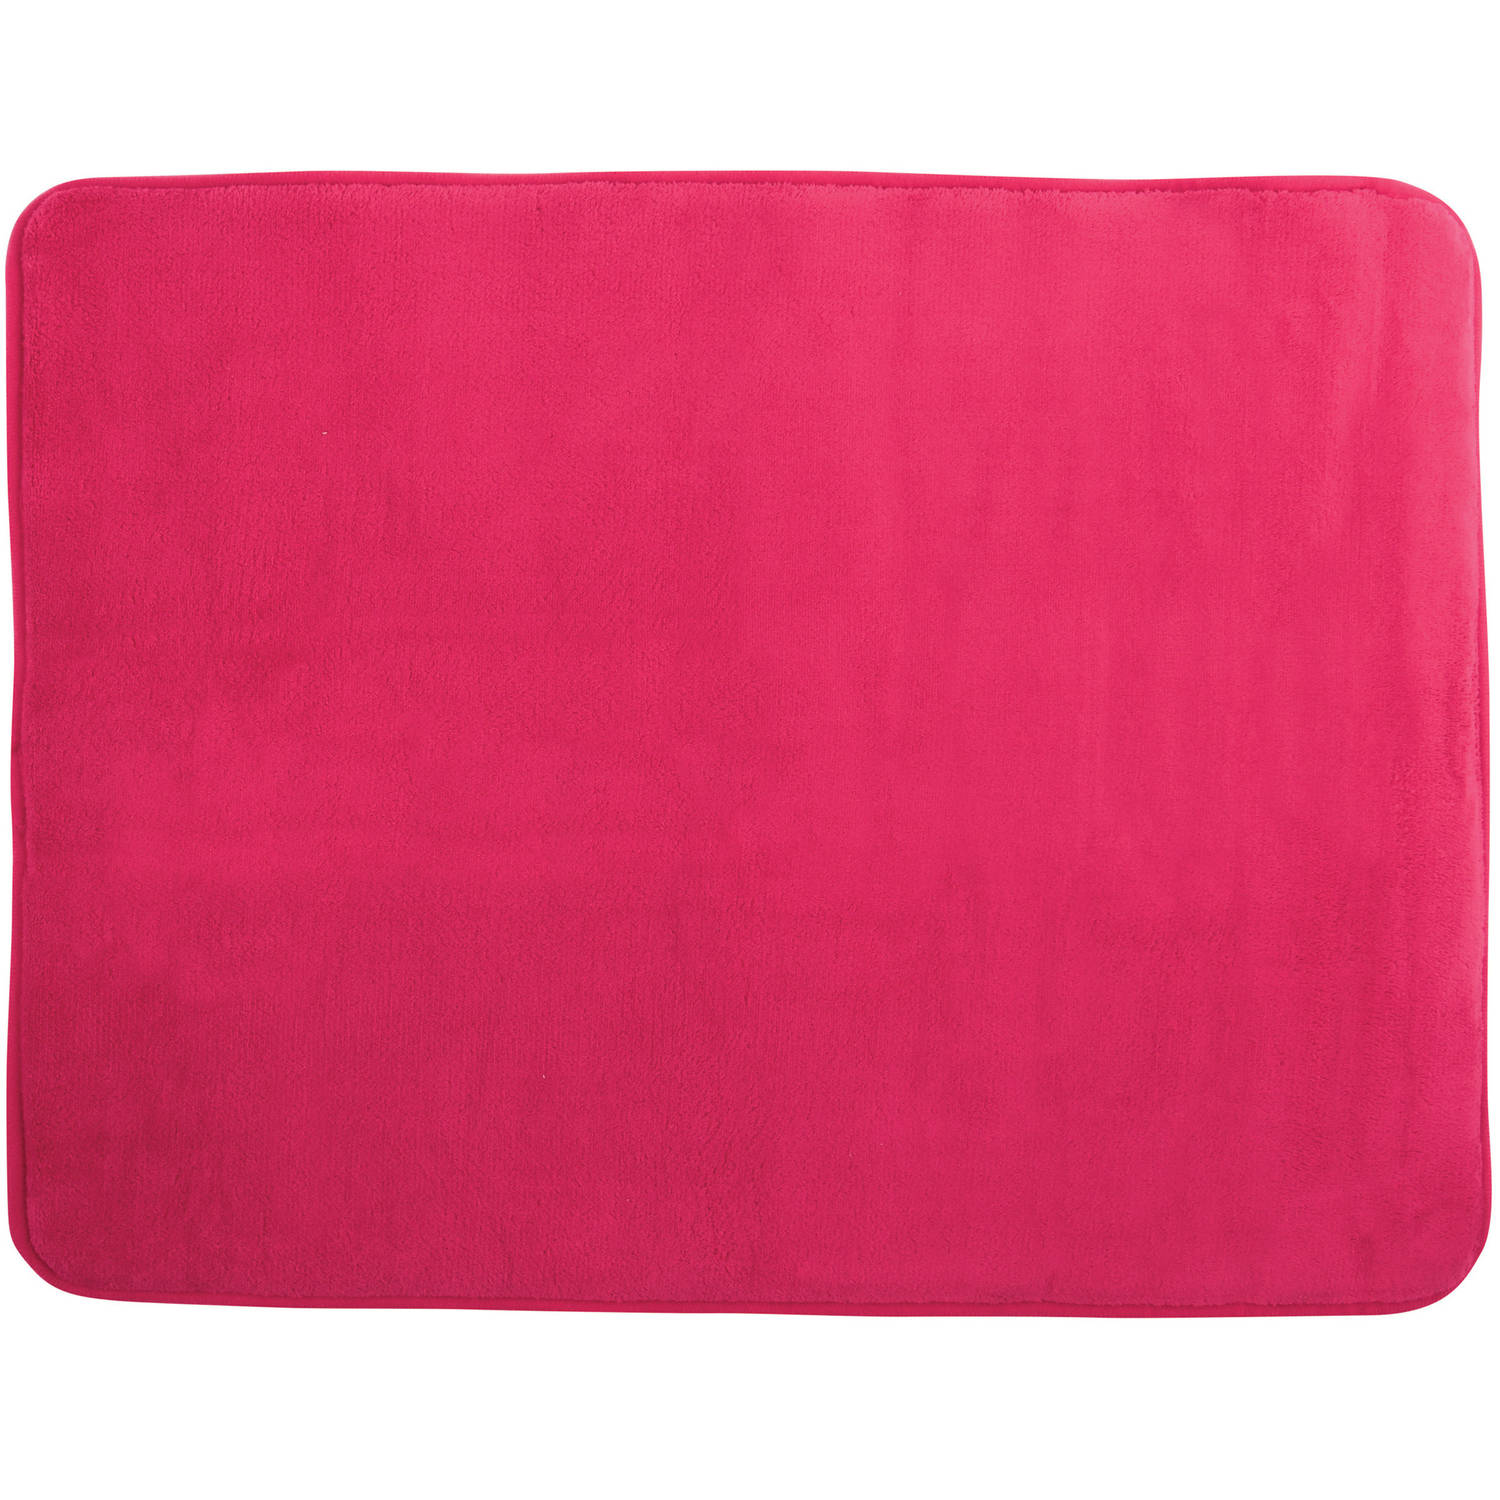 MSV Badkamerkleedje-badmat tapijt voor op de vloer fuchsia roze 50 x 70 cm Badmatjes